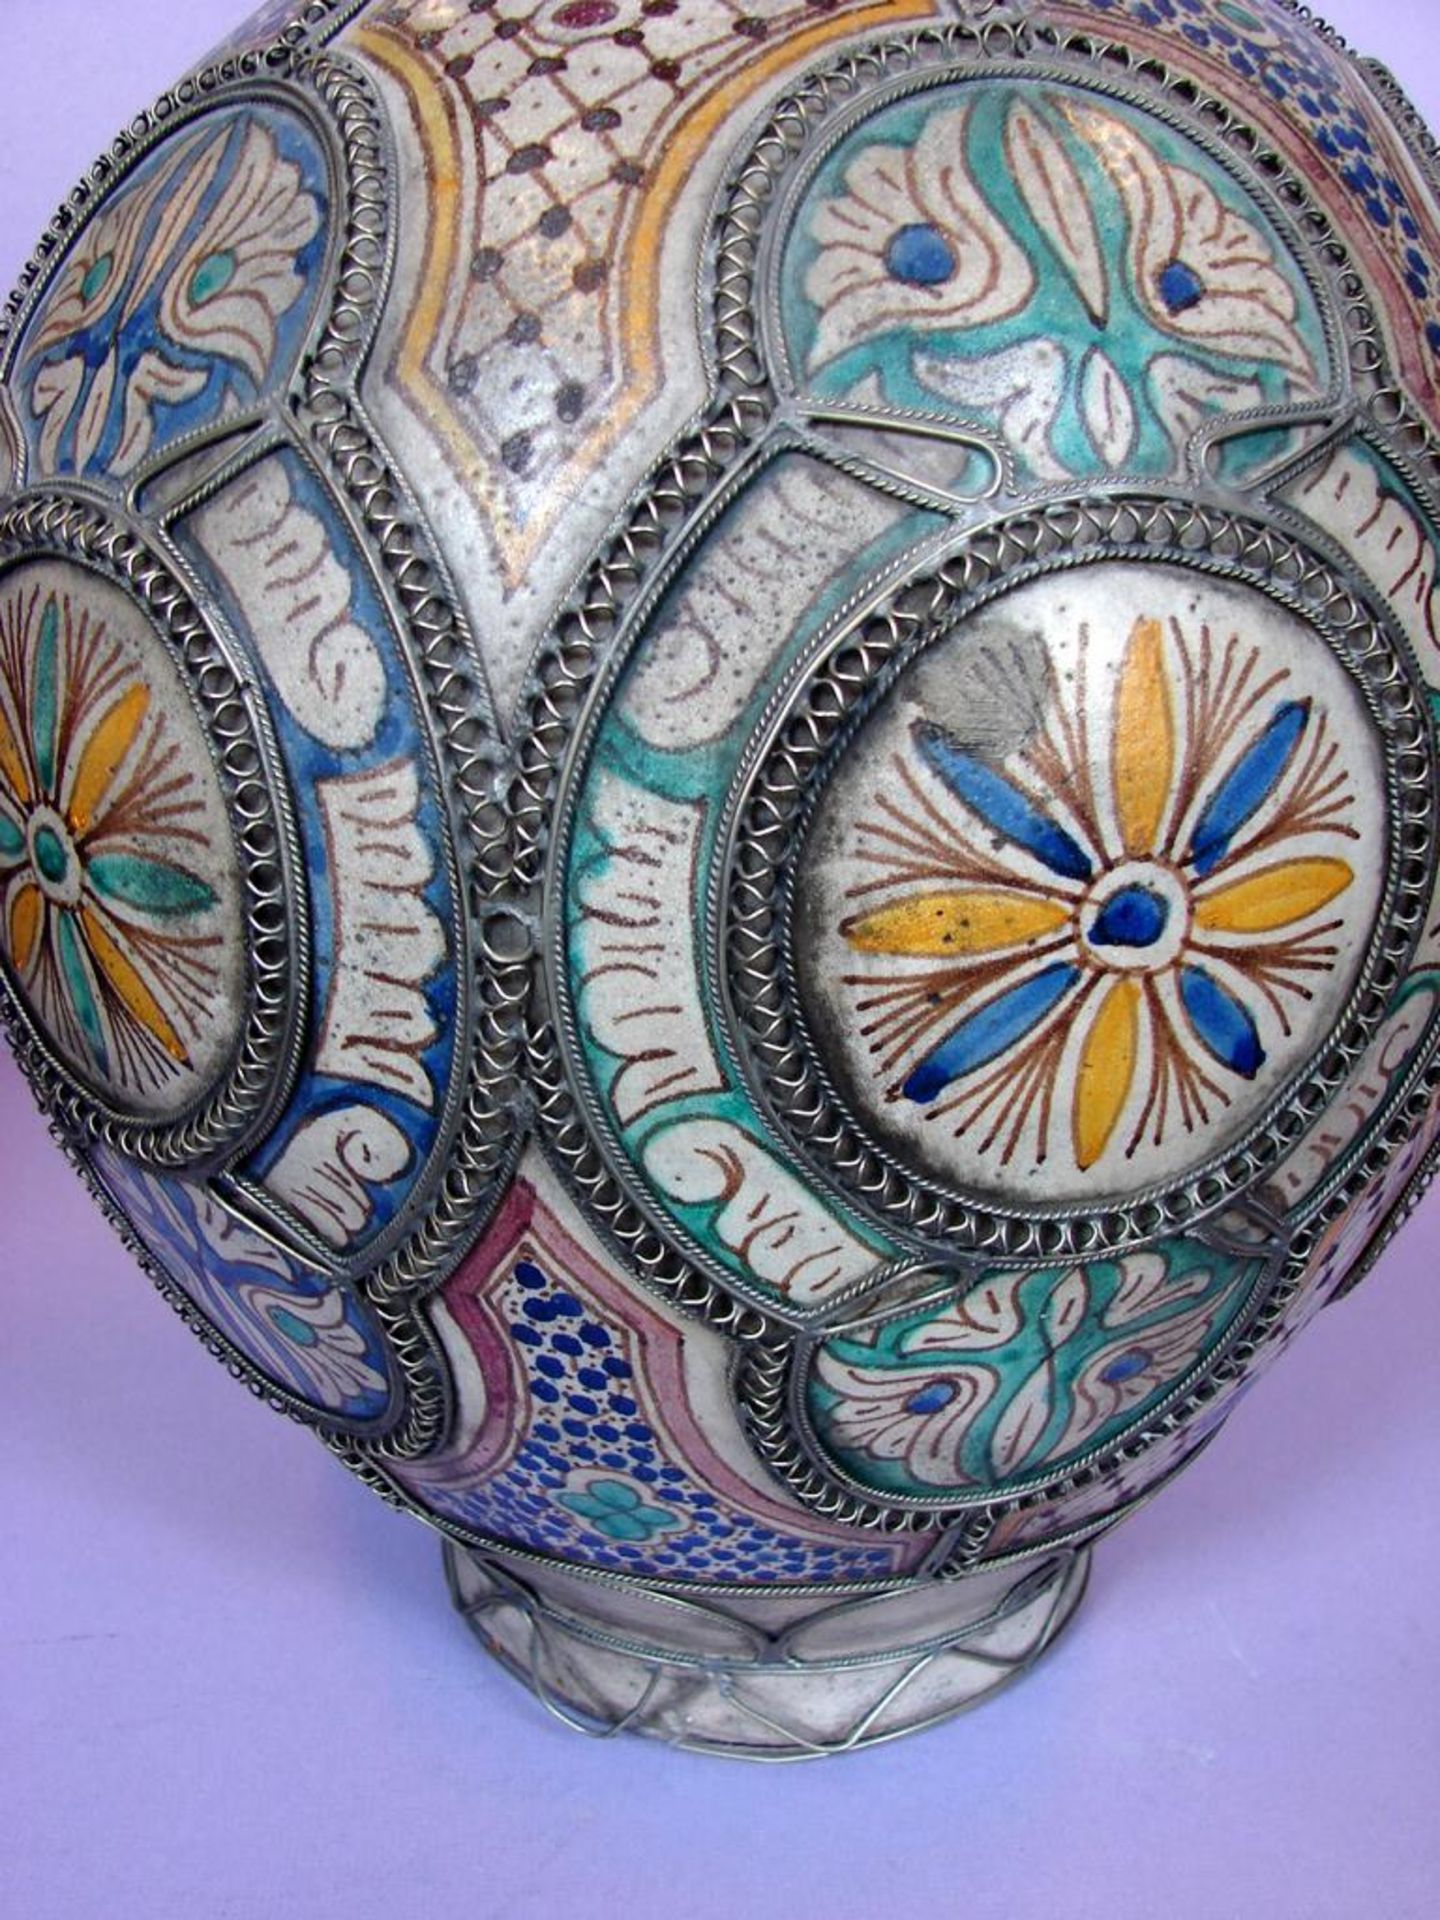 Vase, Metallverzierungen, blau/gelb/grüner Dekor, Höhe ca. 42 cm, leichte Glasurabplatzung am Rand - Bild 2 aus 2